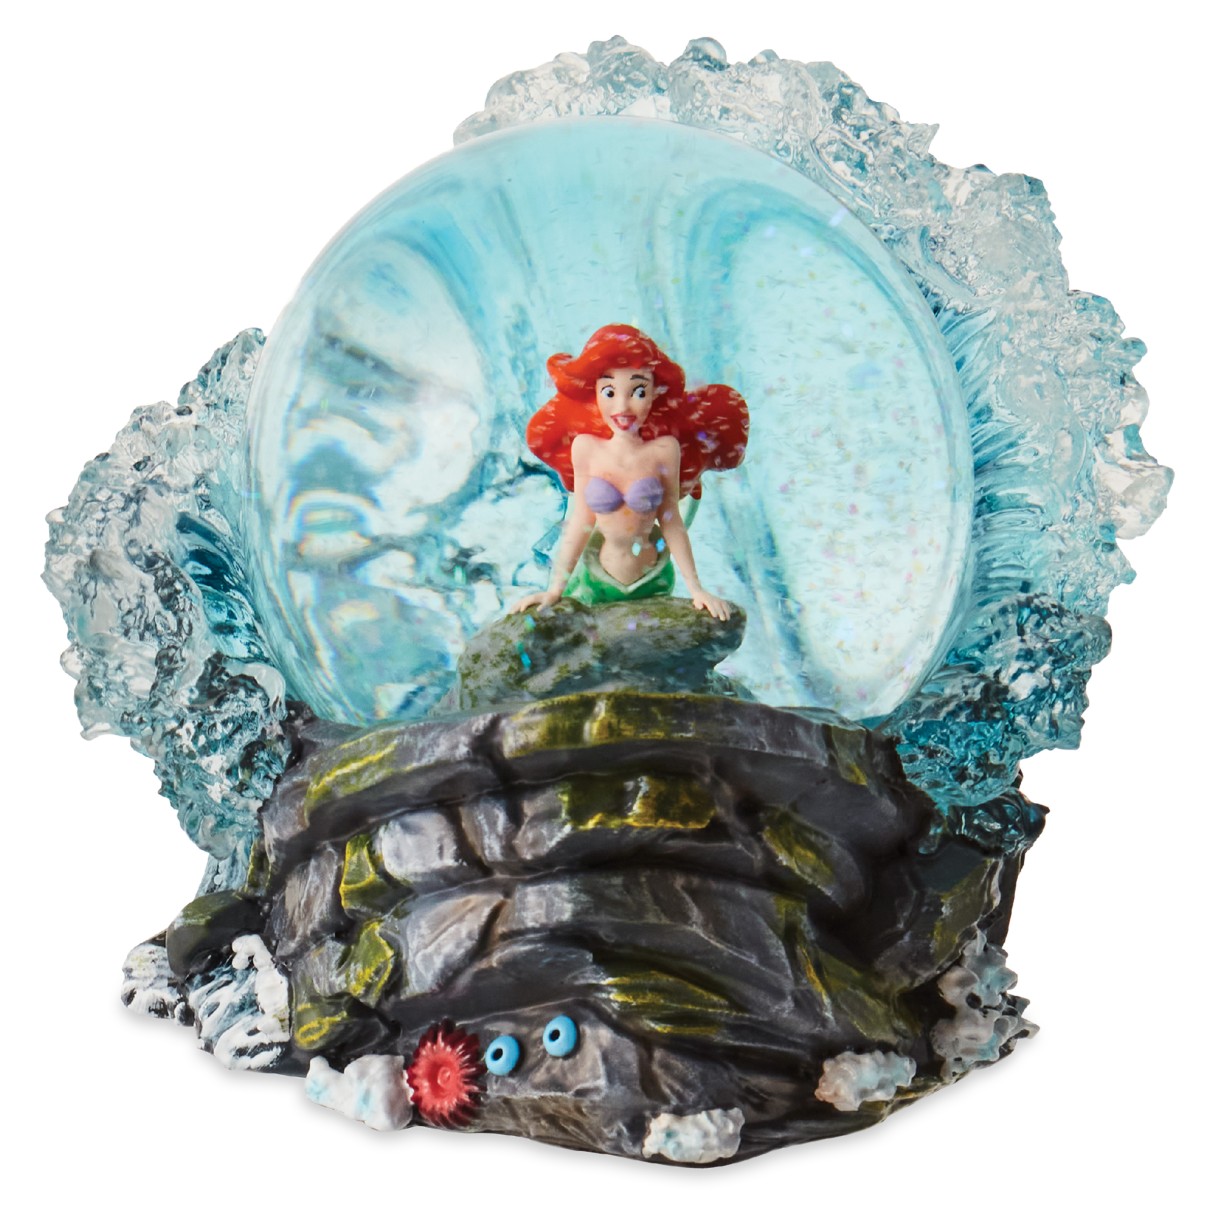 Ariel Water Globe by Enesco – The Little Mermaid